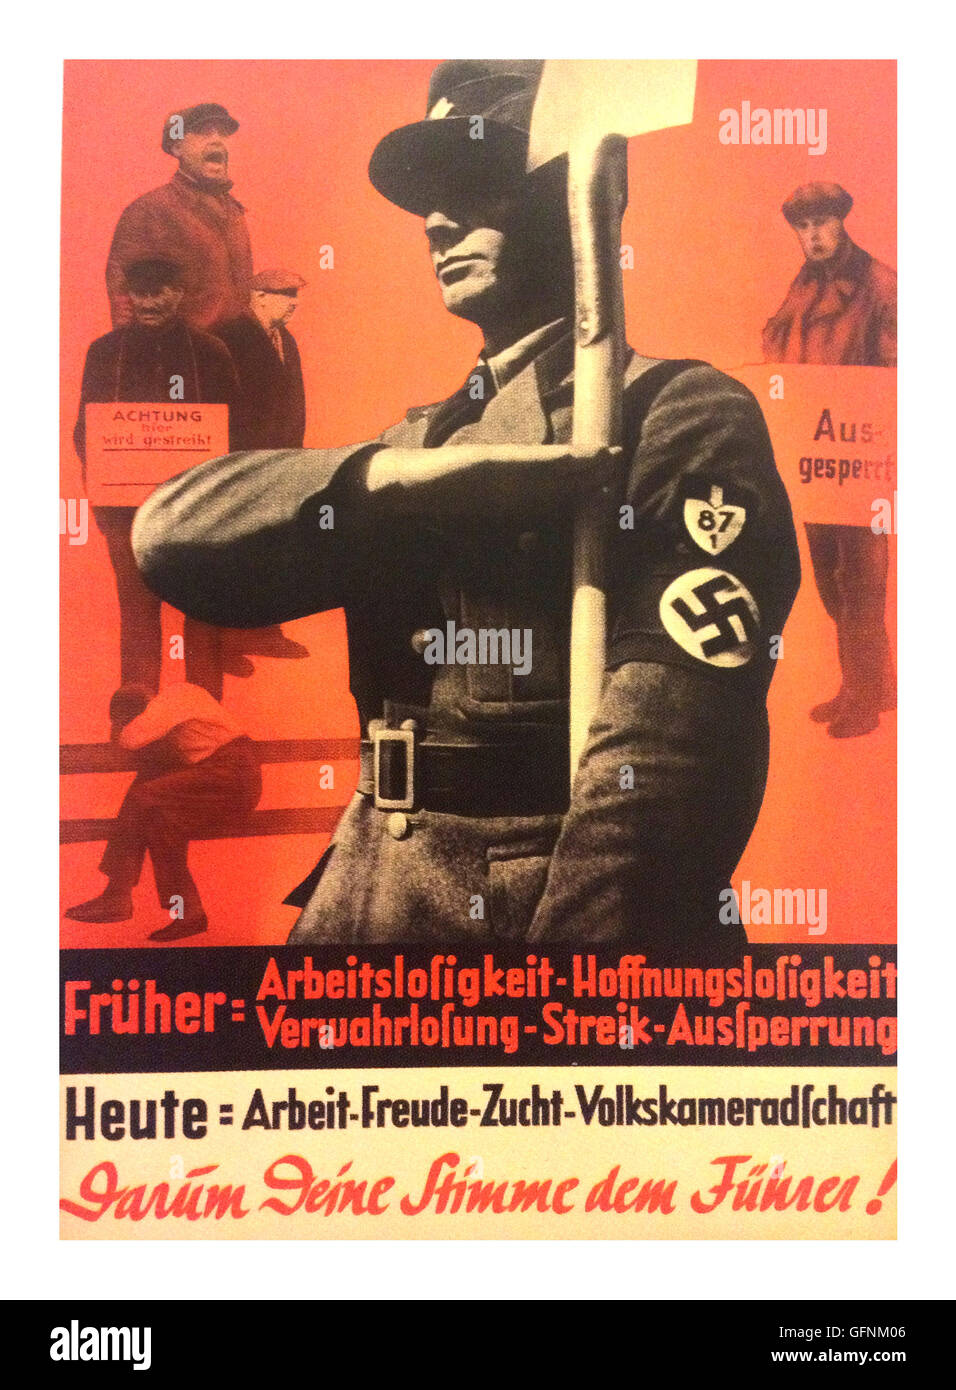 1937 affiches de propagande du NSDAP d'Adolf Hitler, avec un membre du parti Nazi en uniforme portant un brassard à croix gammée, saluant comme il est tenant une pelle, avec ou sans emploi les travailleurs en grève à l'arrière-plan. "Le 29 mars, voter pour Adolf Hitler, qui va mettre fin au chômage et à la guerre civile en Allemagne' Banque D'Images